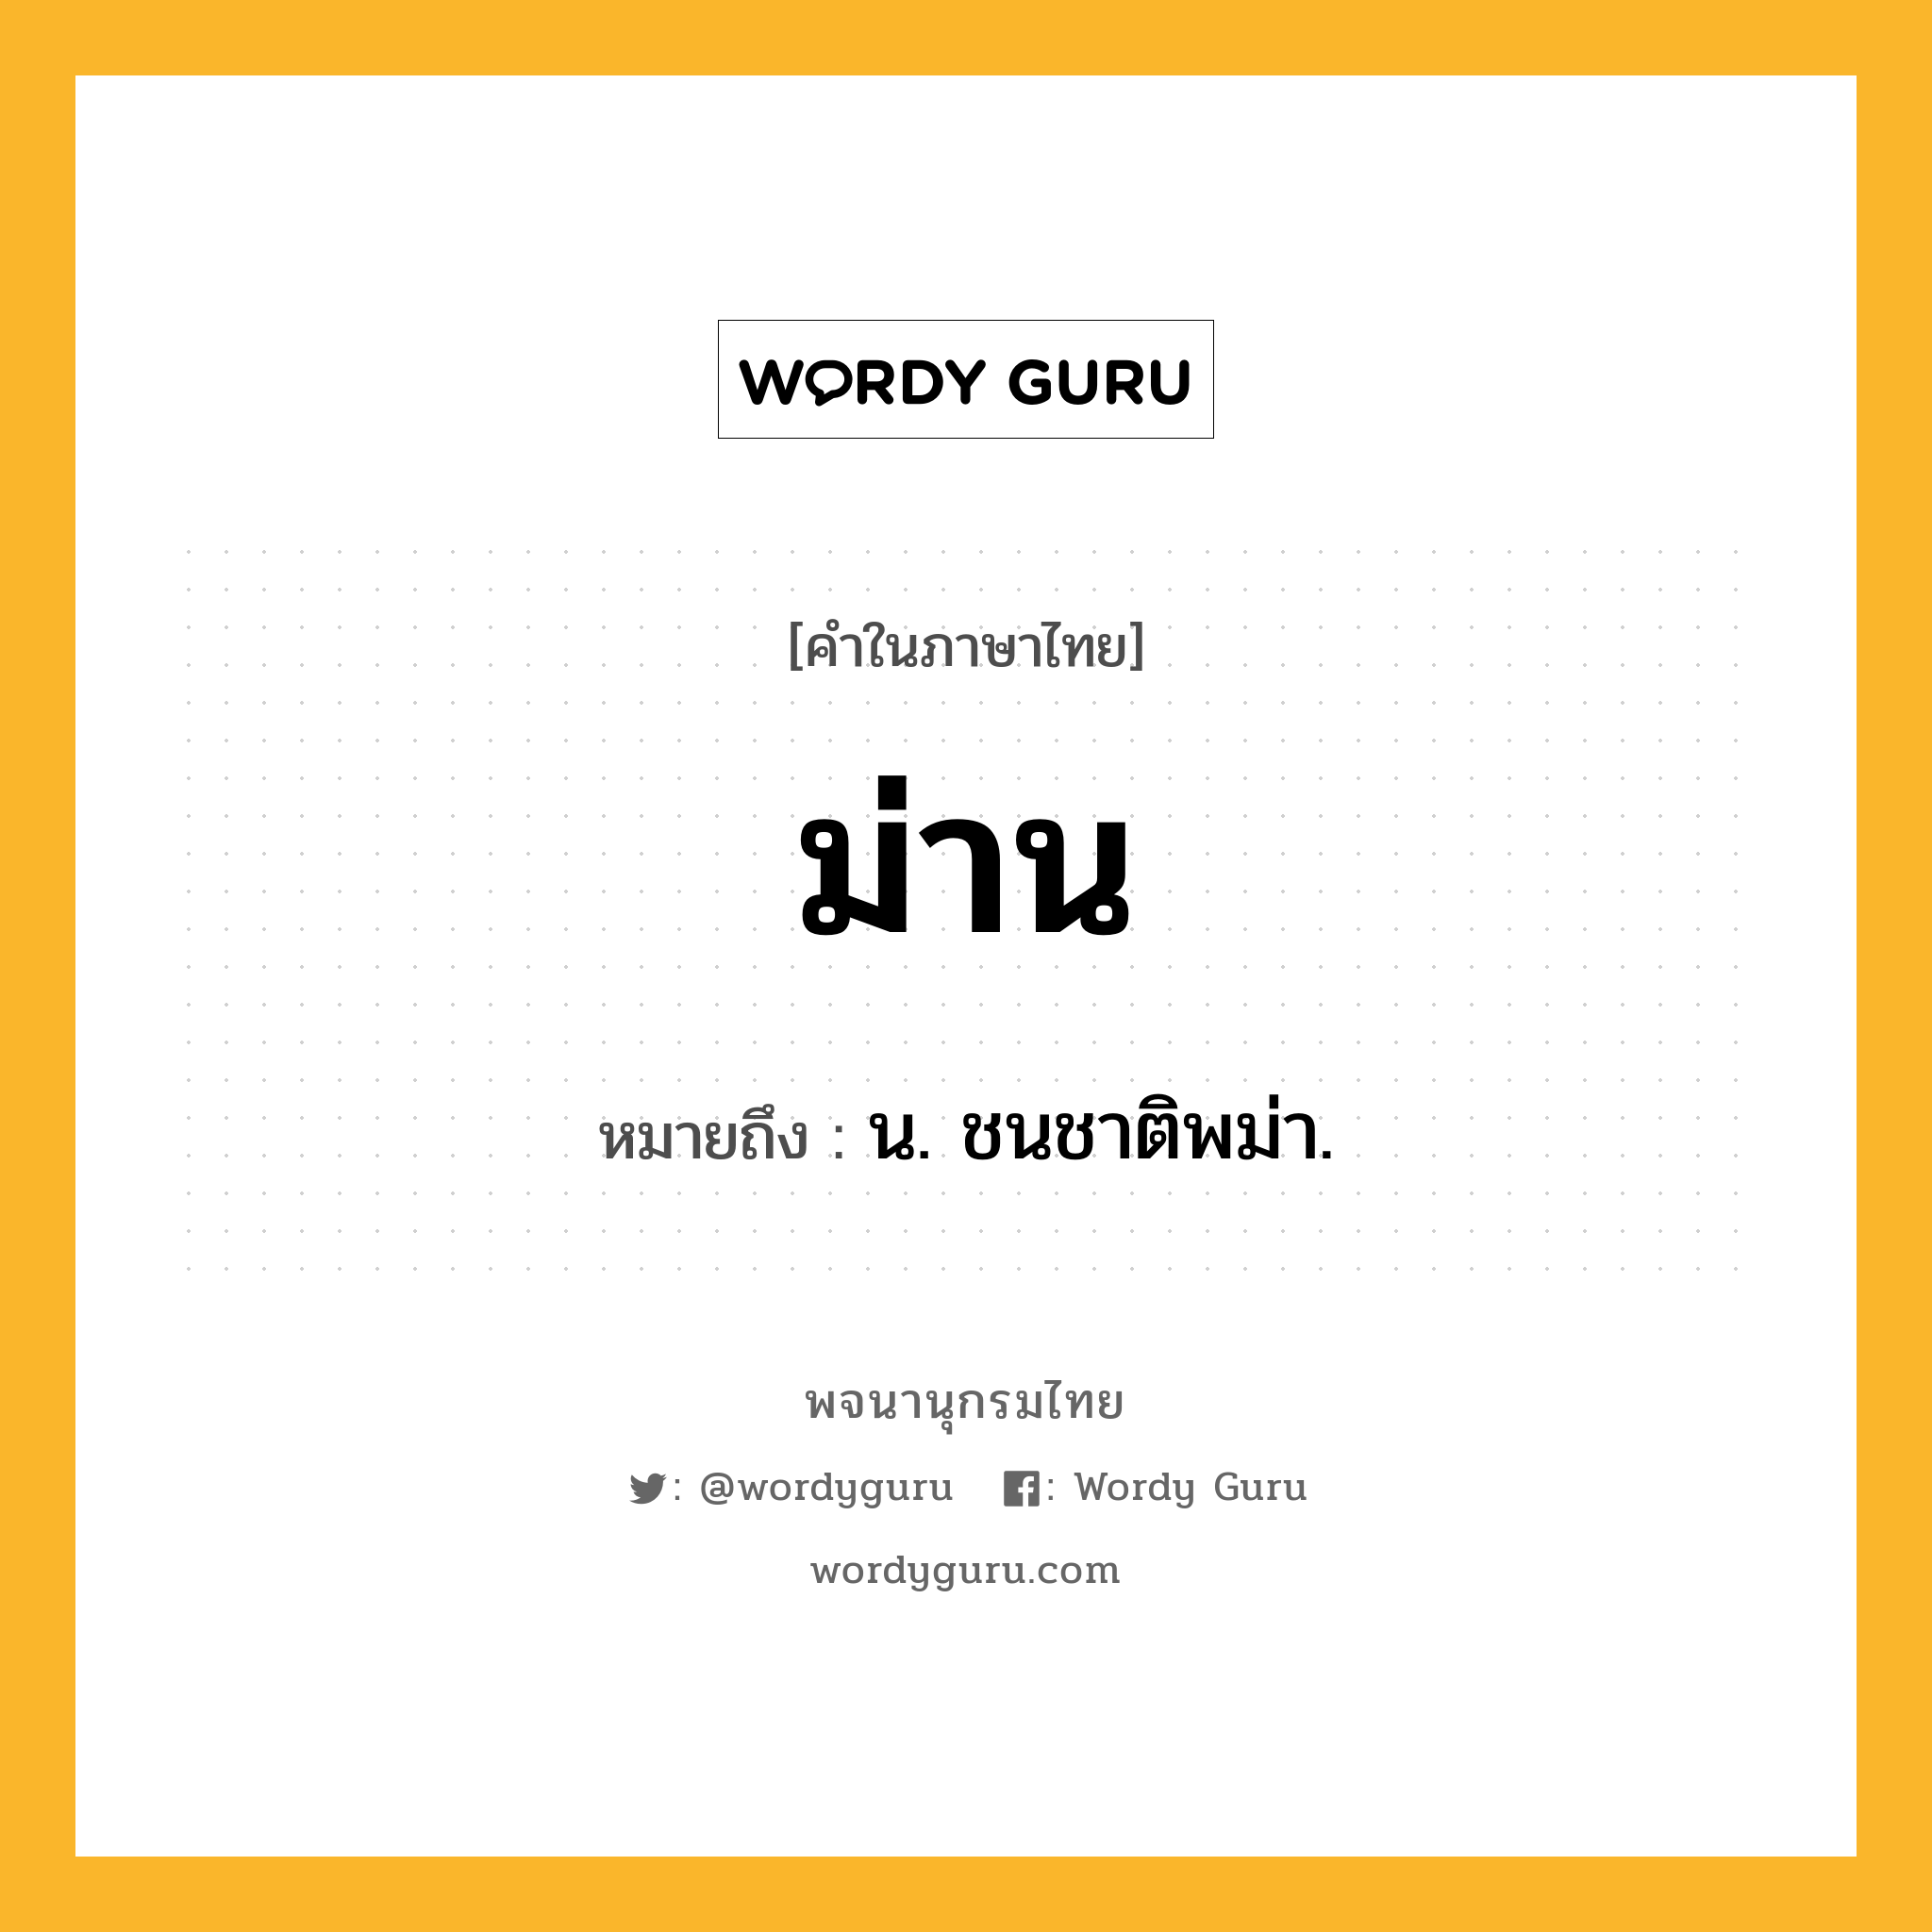 ม่าน ความหมาย หมายถึงอะไร?, คำในภาษาไทย ม่าน หมายถึง น. ชนชาติพม่า.